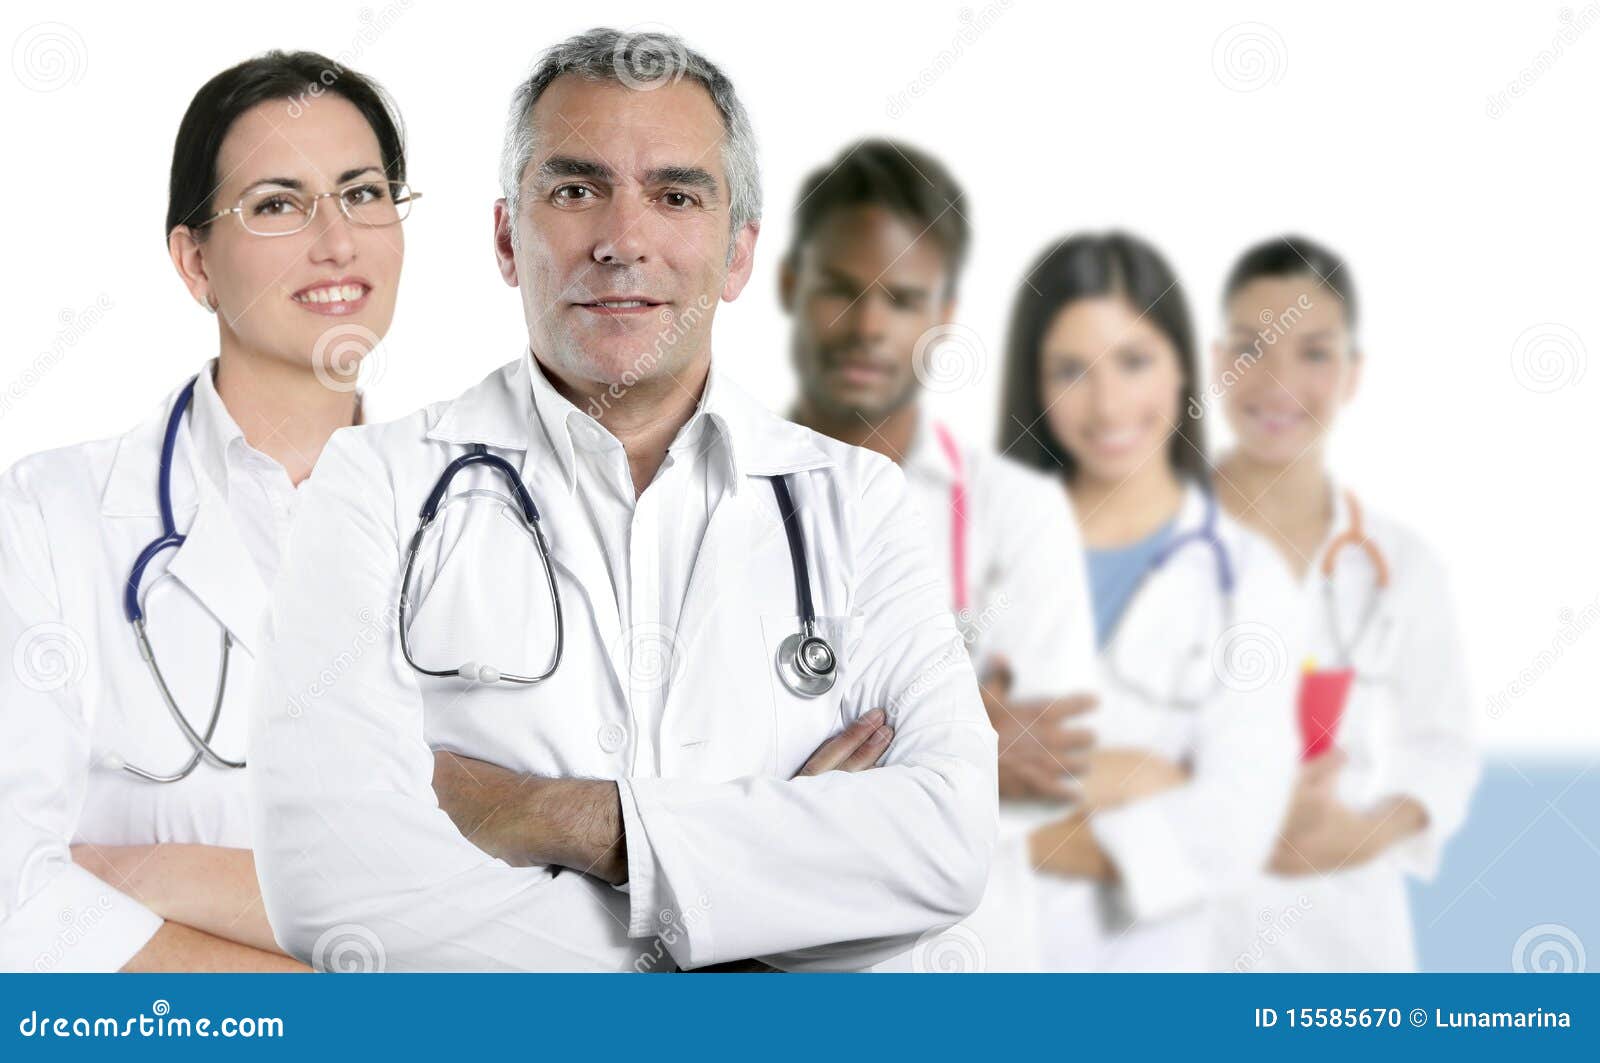 expertise doctor multiracial nurse team row